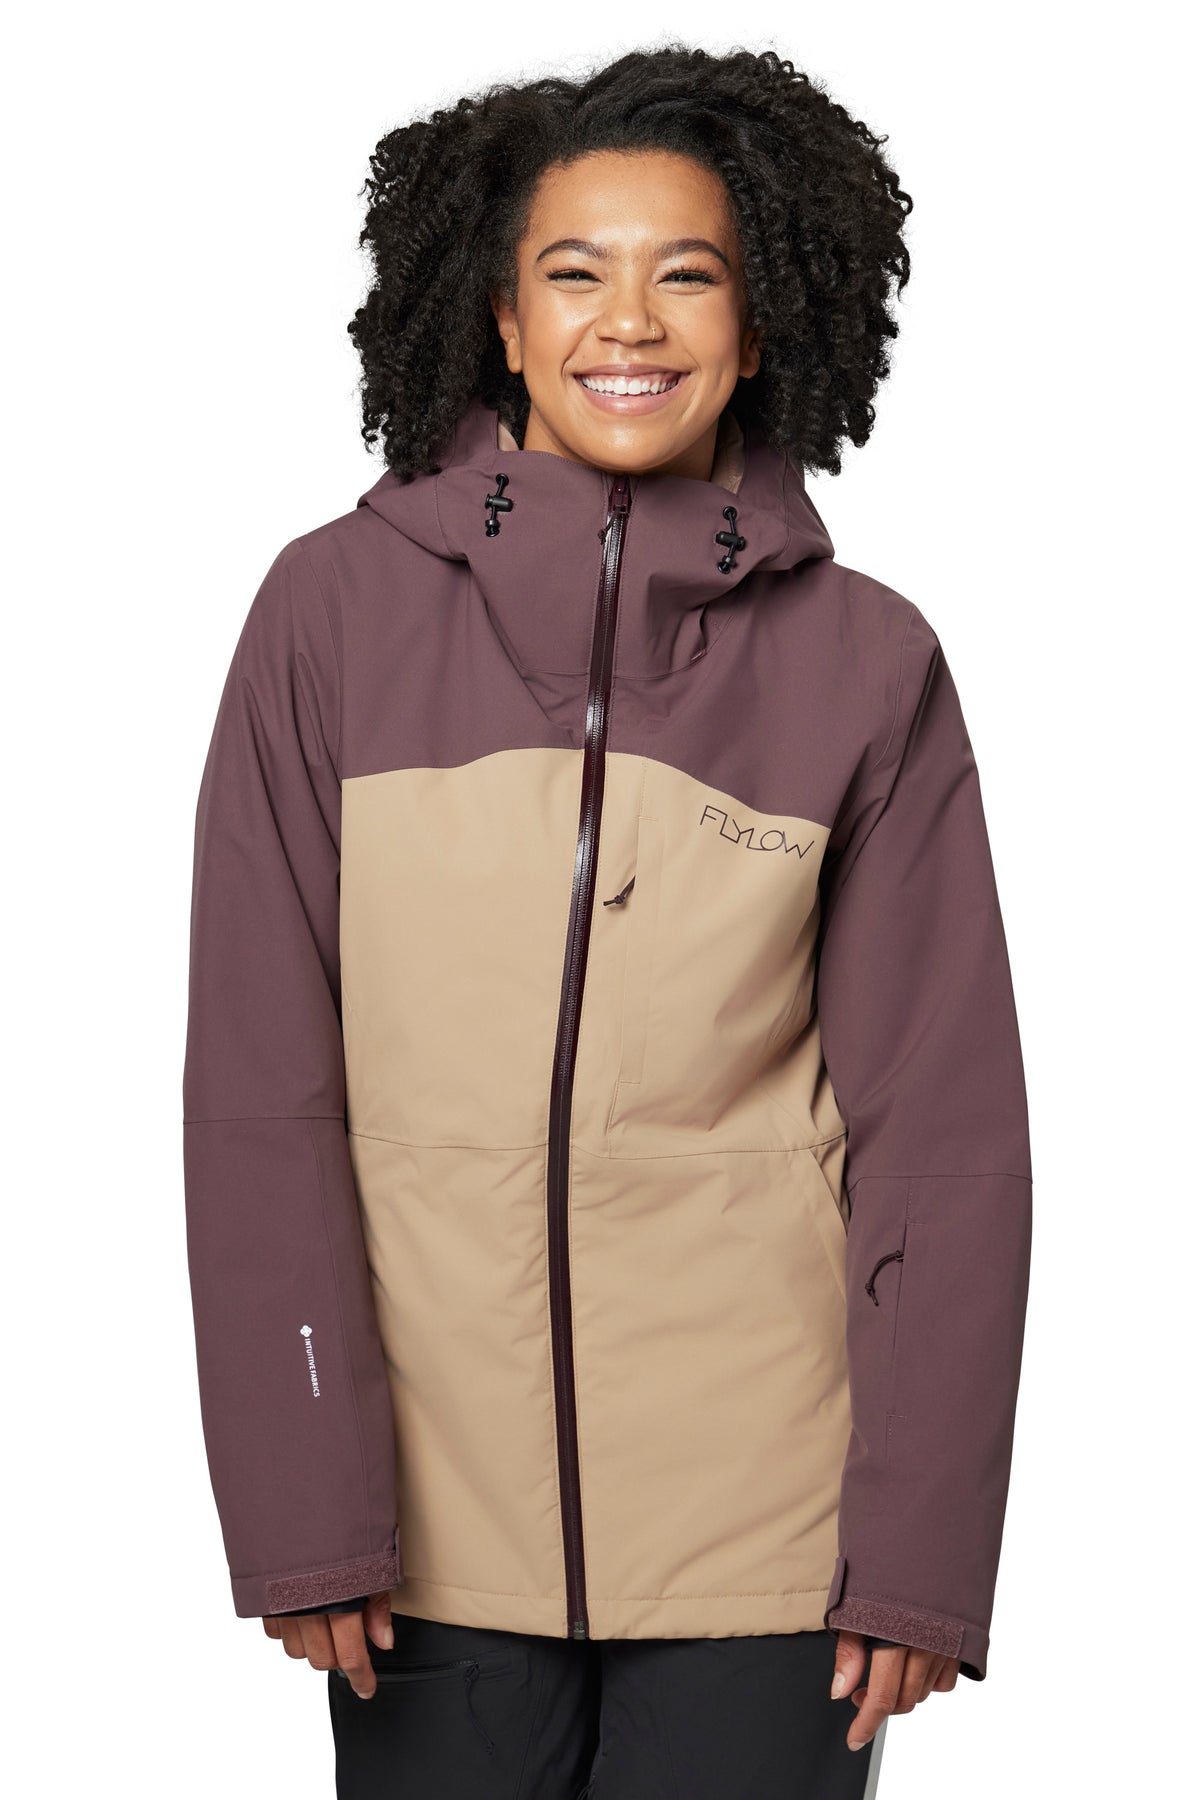 Freya Jacket - Women's Insulated Ski Jacket